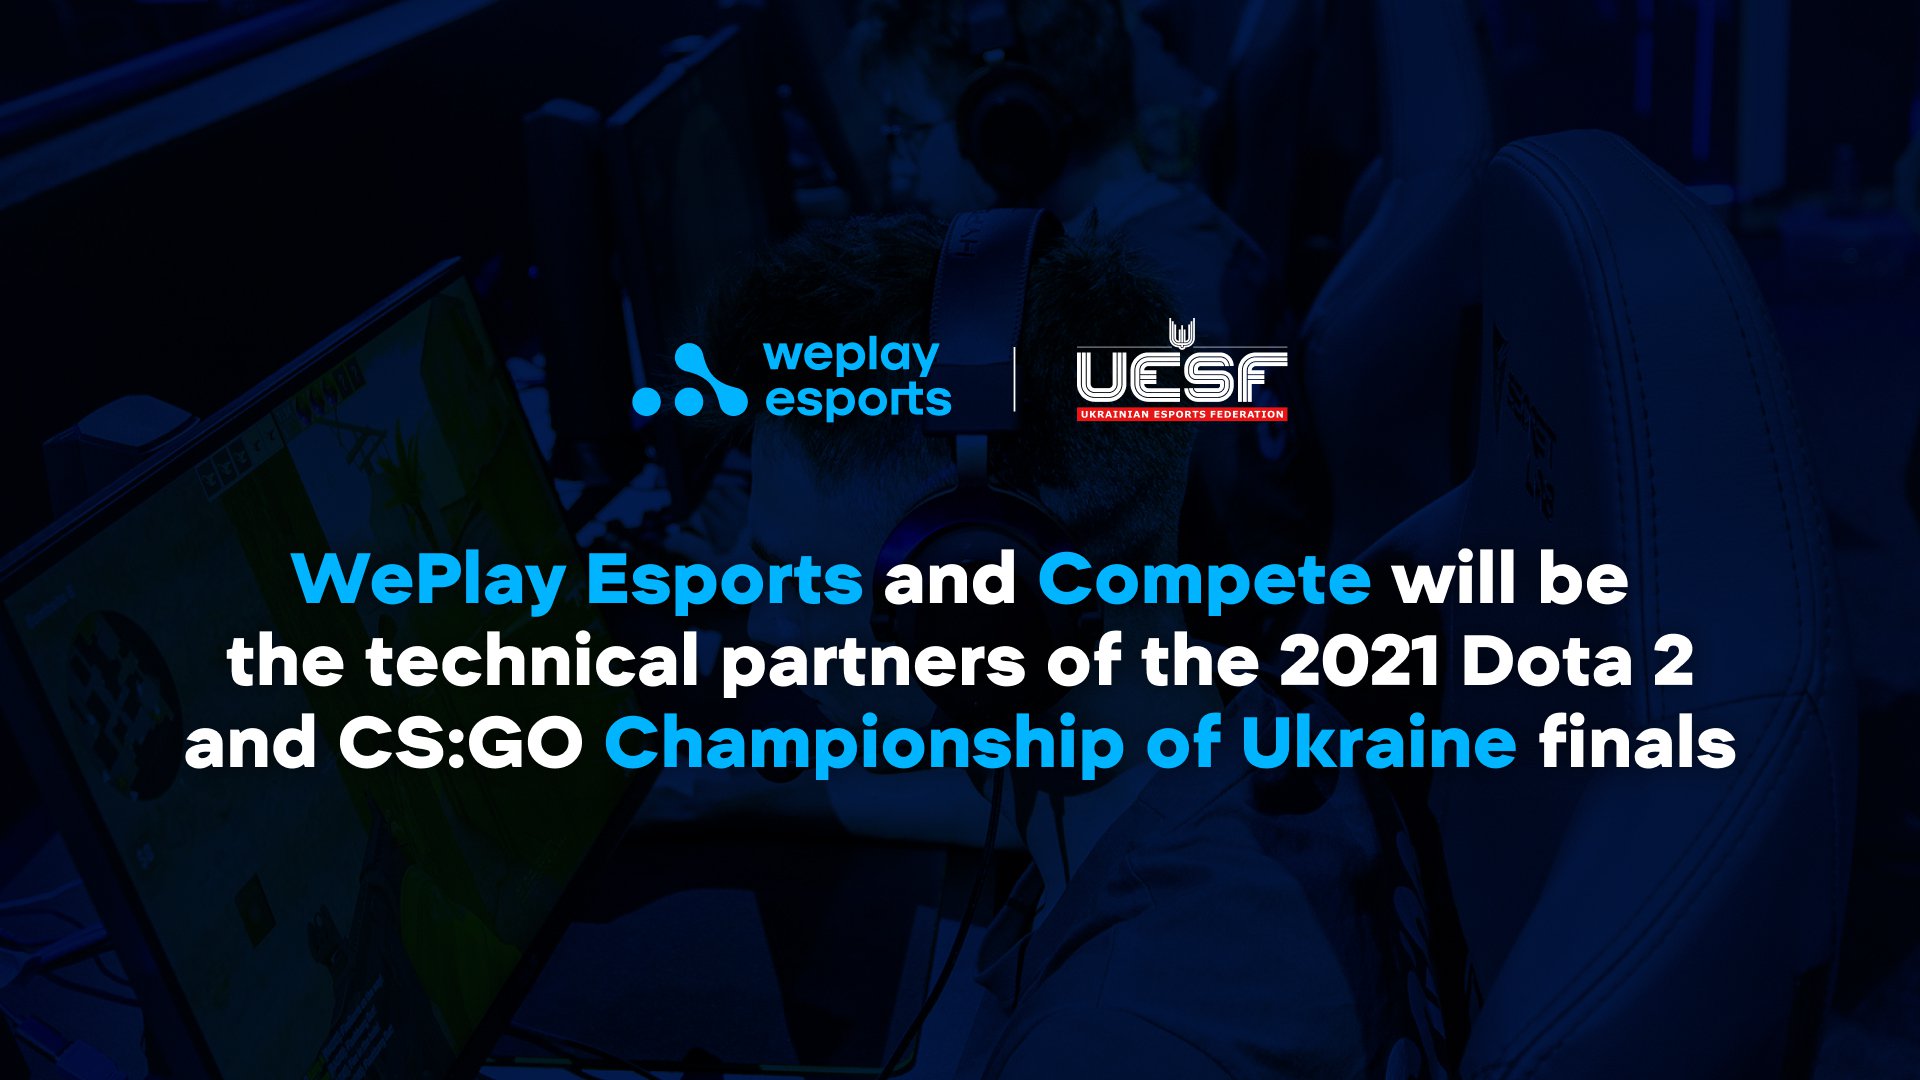 WePlay Esports 和 Compete 将成为 2021 Dota 2 和 CS:GO 乌克兰总决赛的技术合作伙伴。图像: WePlay Holding